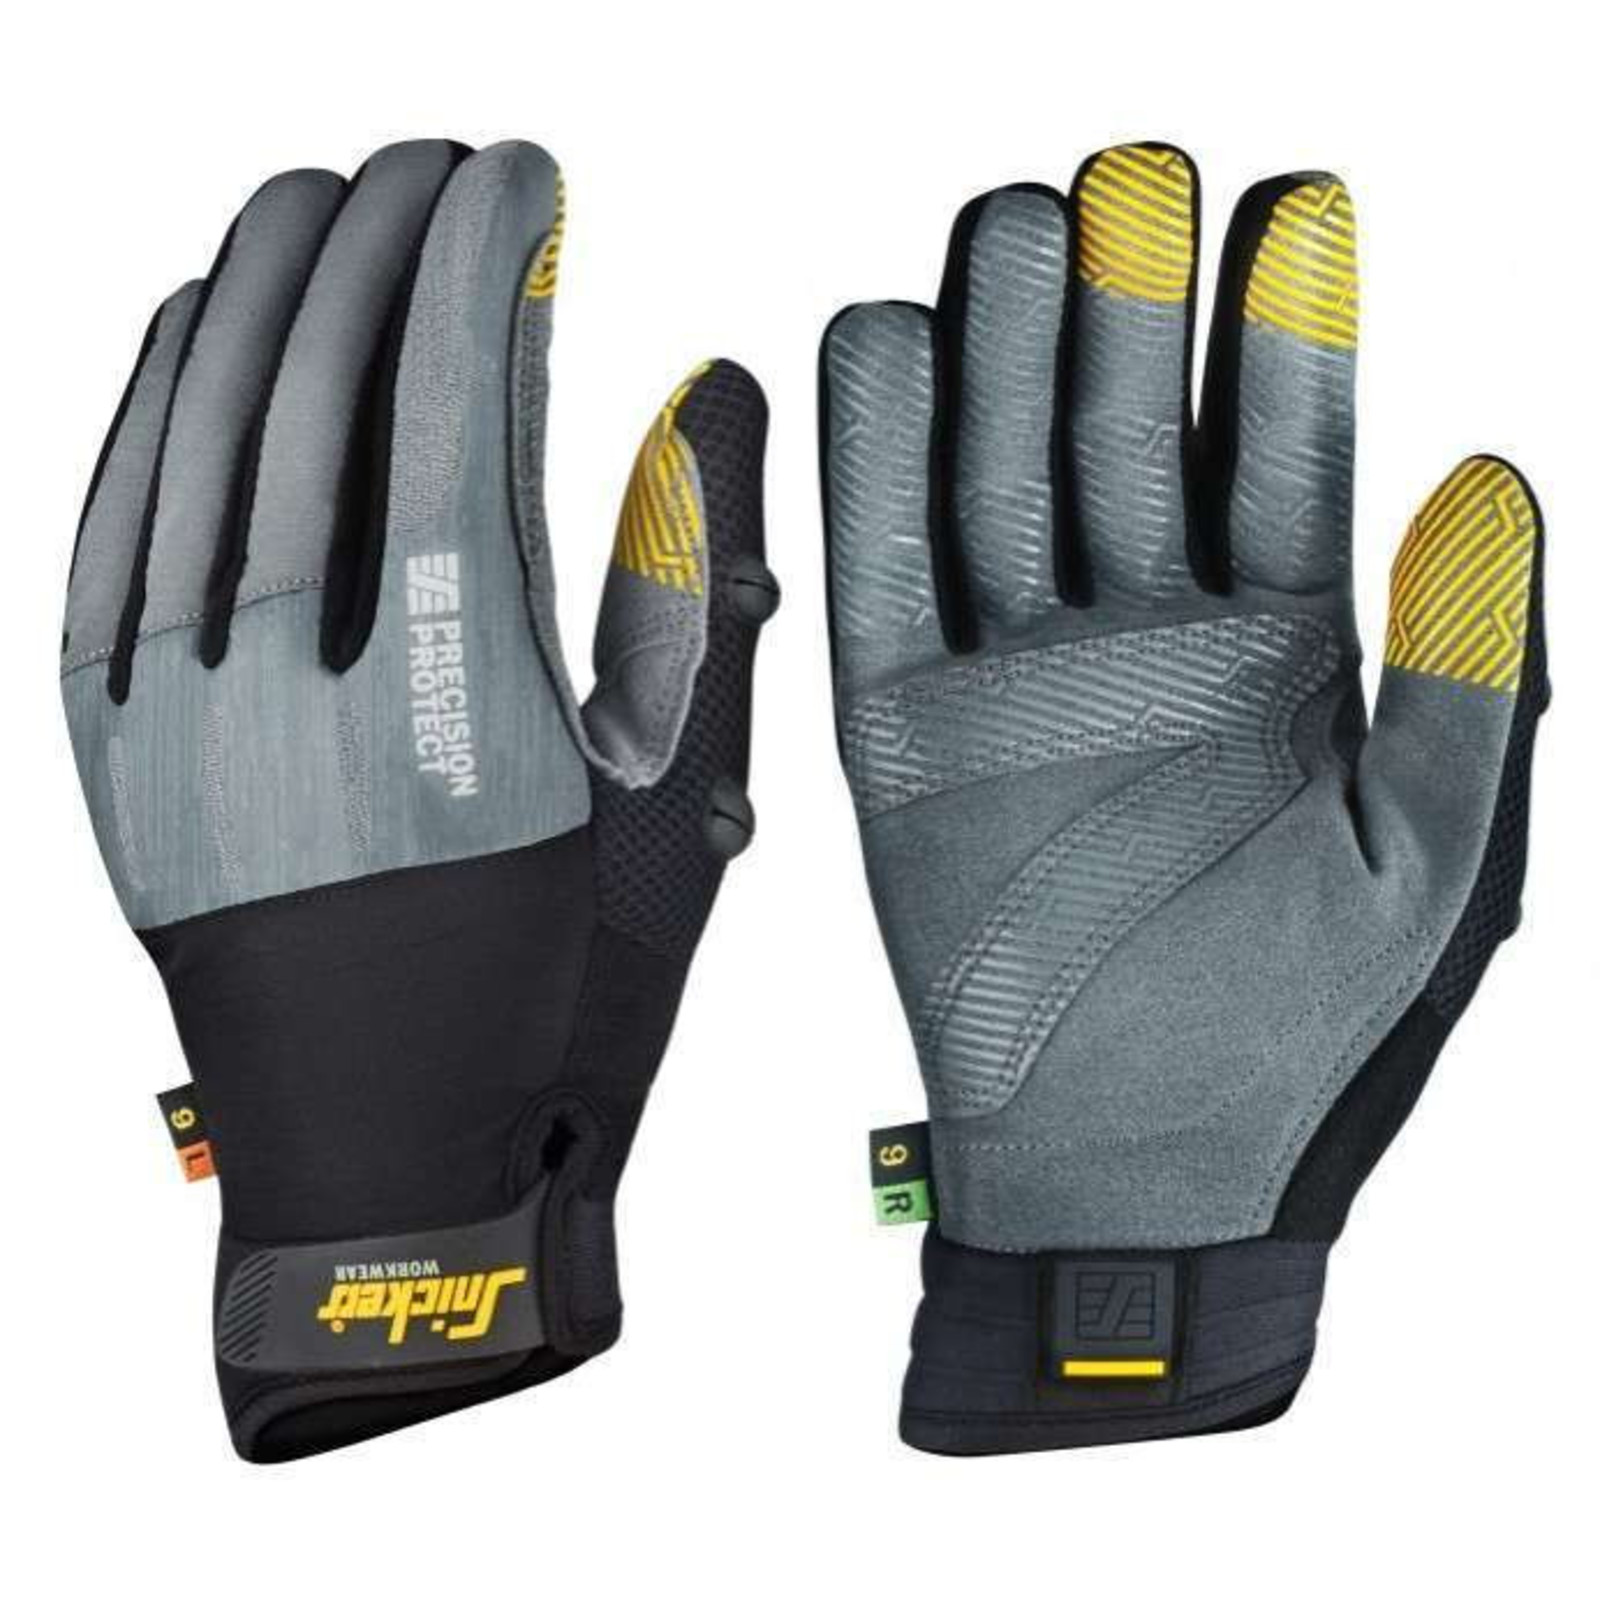 Pracovné rukavice Snickers® Precision Protect kombinované - veľkosť: 10/XL, farba: sivá/čierna